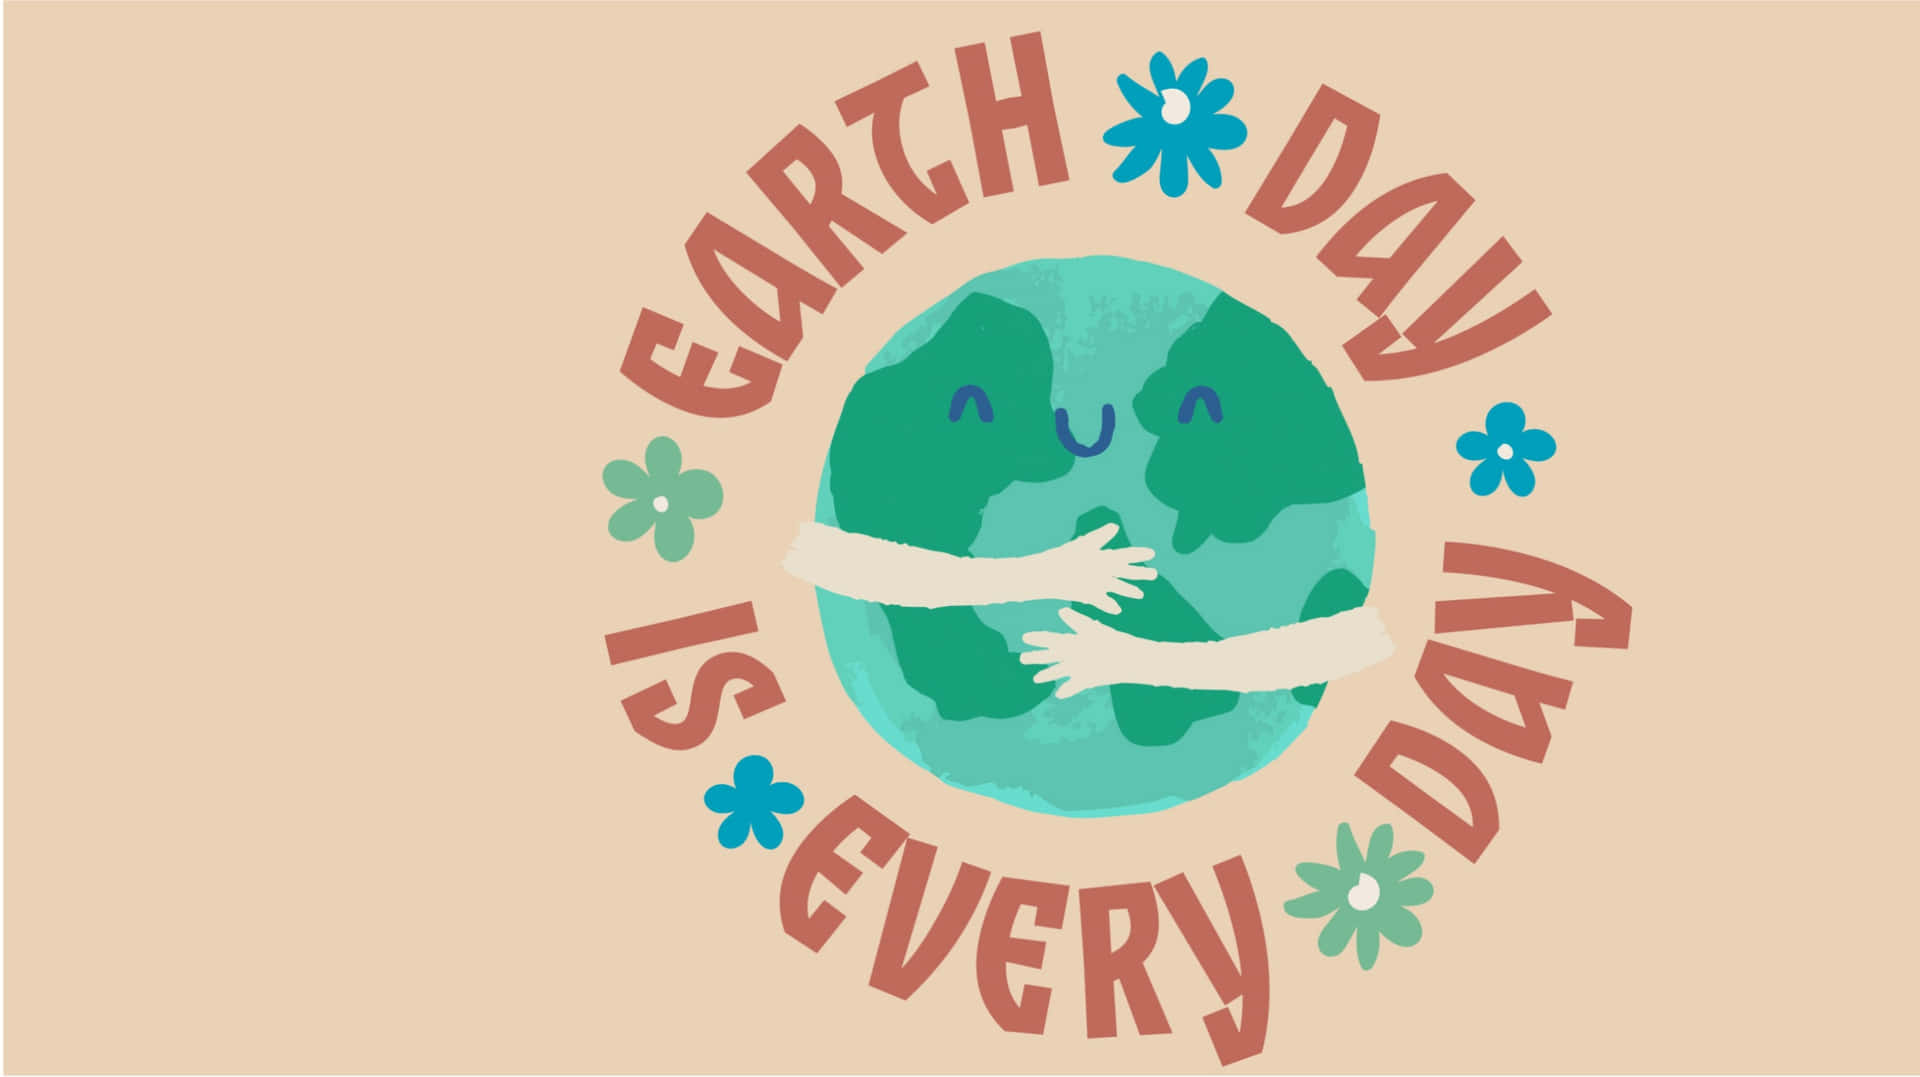 Celebreo Dia Da Terra E Proteja O Nosso Planeta.